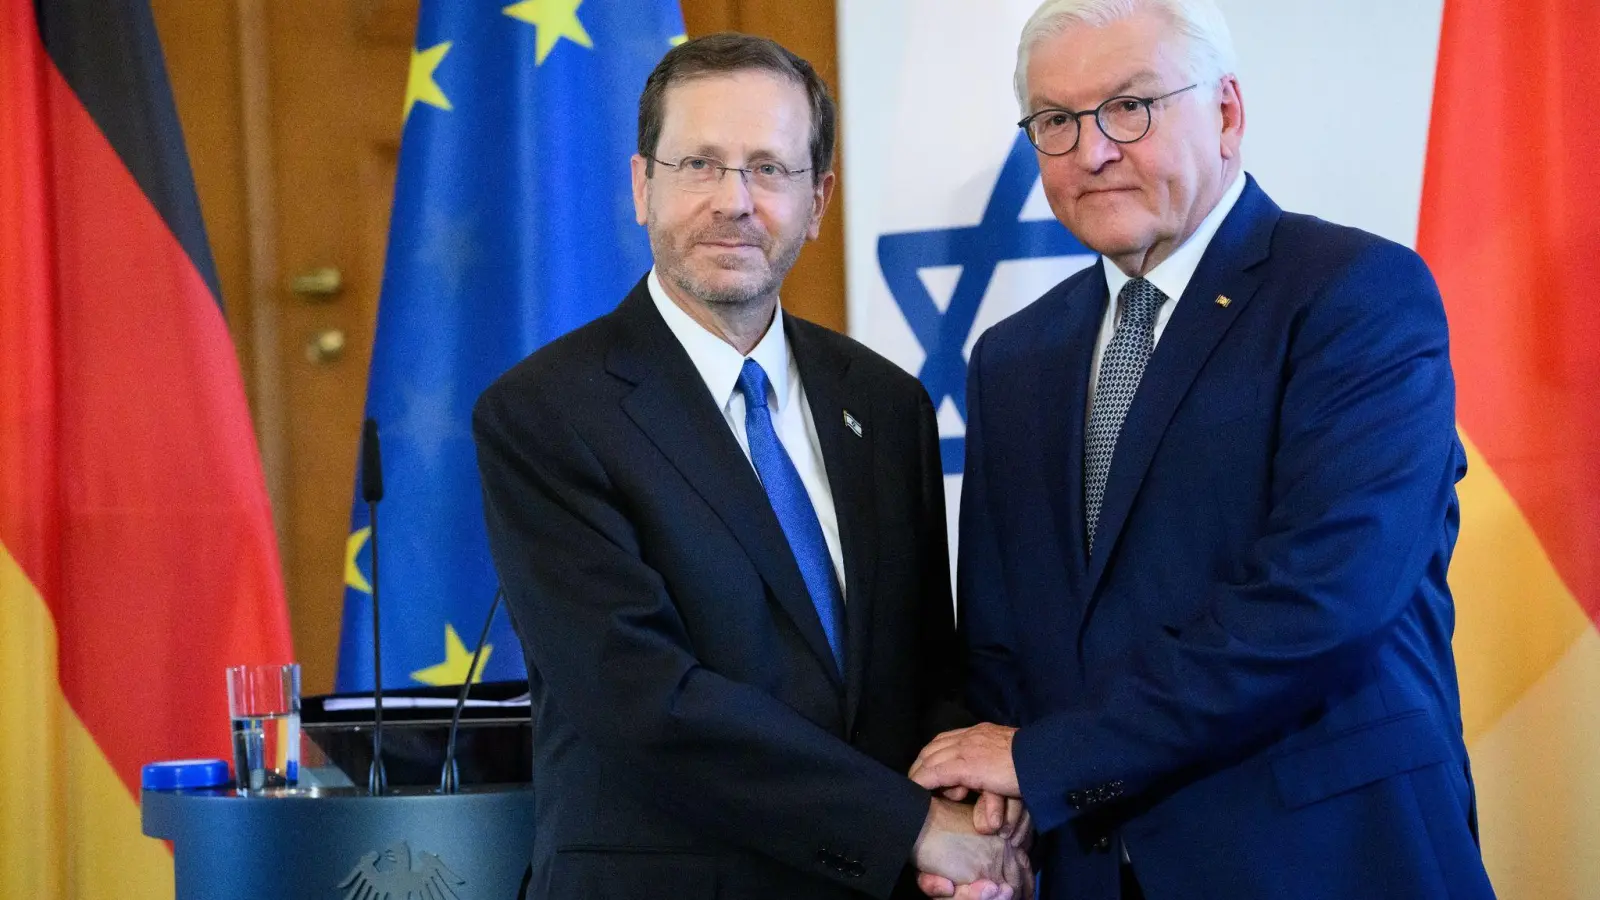 Der israelische Präsident Herzog hat in Berlin Bundespräsident Steinmeier getroffen. (Foto: Bernd von Jutrczenka/dpa)